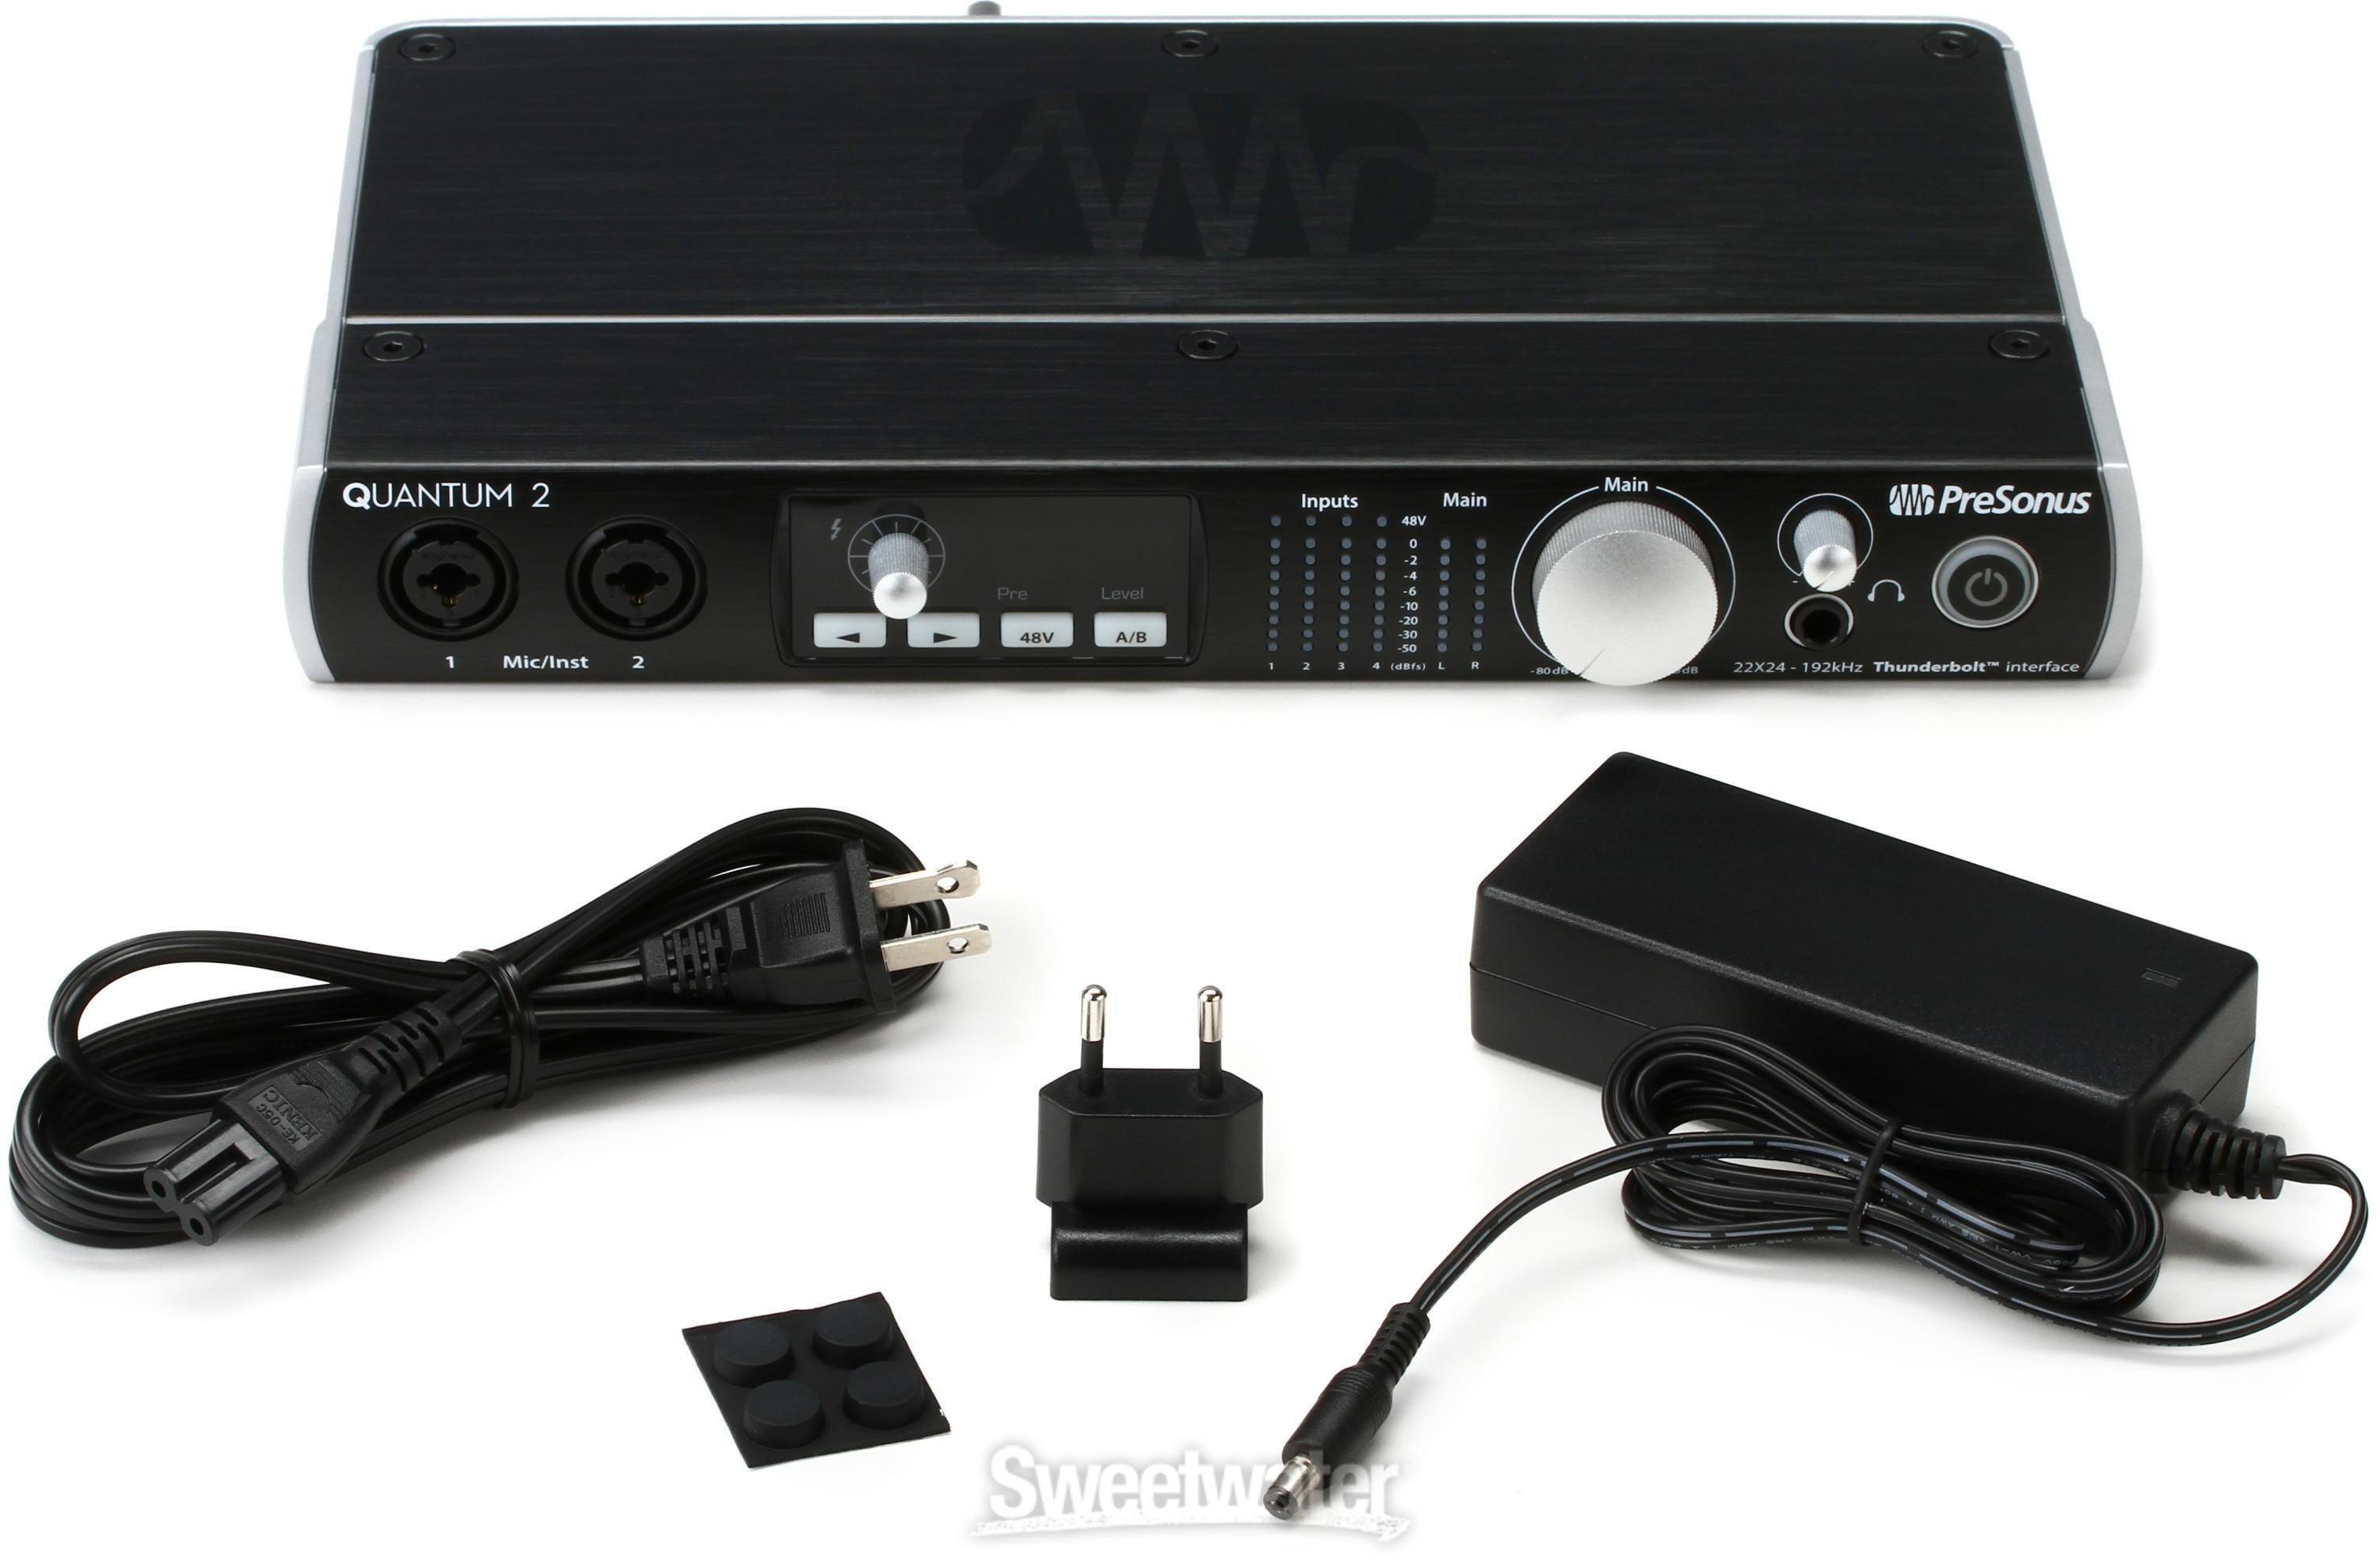 PreSonus Quantum 2 22x24 Thunderbolt 2 Audio Interface Reviews 